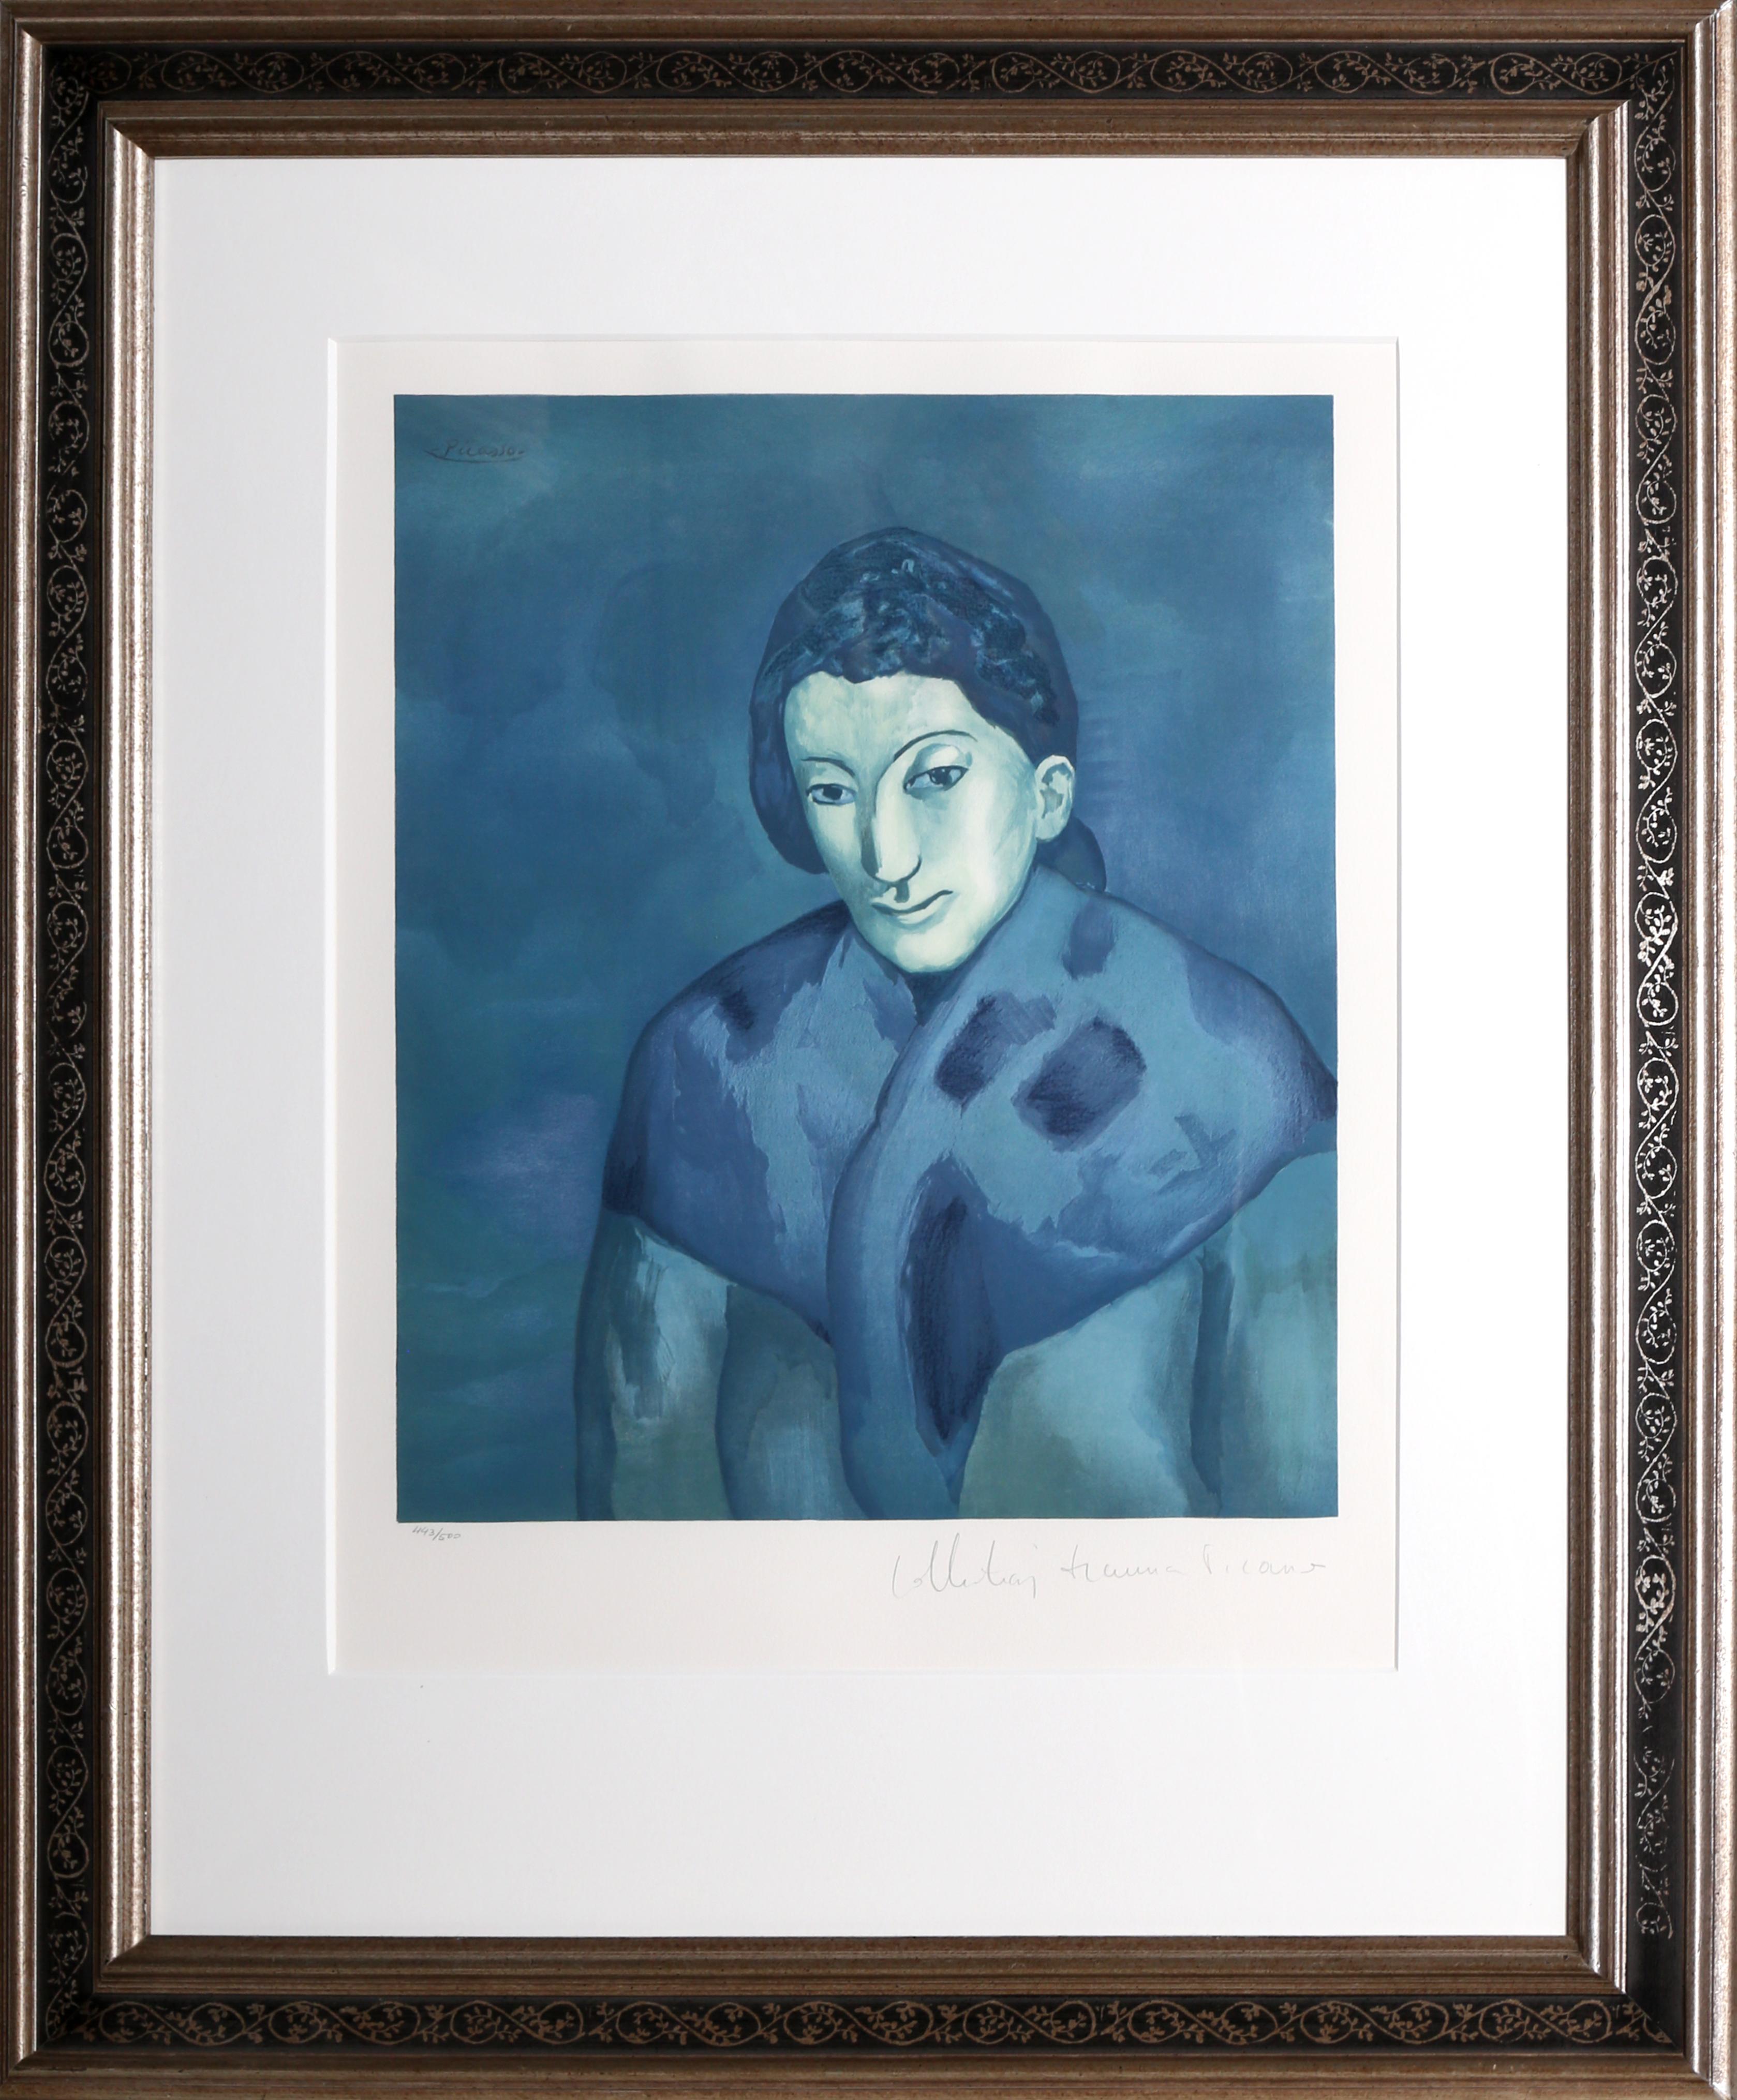 Une lithographie de la collection Marina Picasso Estate d'après le tableau de Pablo Picasso "Buste de Femme".  La peinture originale a été achevée en 1902. Dans les années 1970, après la mort de Picasso, Marina Picasso, sa petite-fille, a autorisé